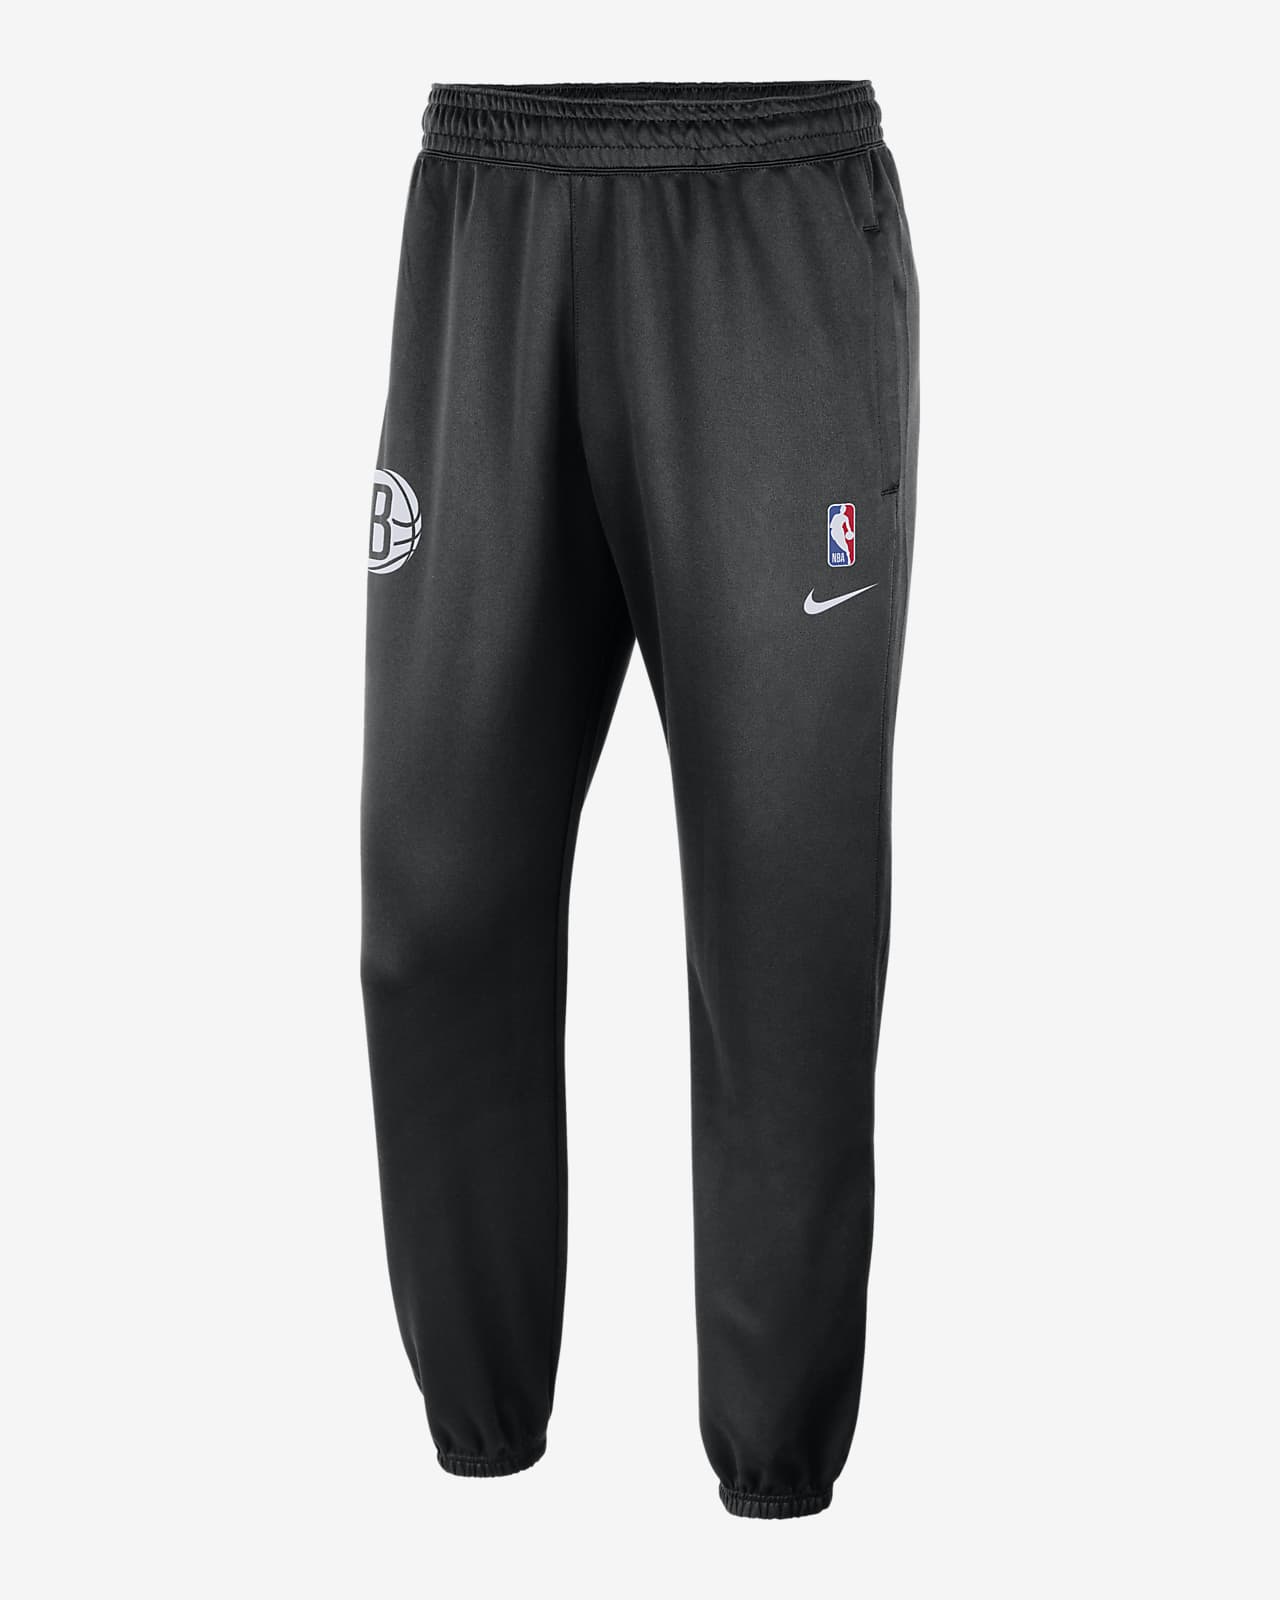 Boss X NBA Score Sweatpants Jogger Sweat-Pants Sports Tracksuit Trousers  New M | eBay